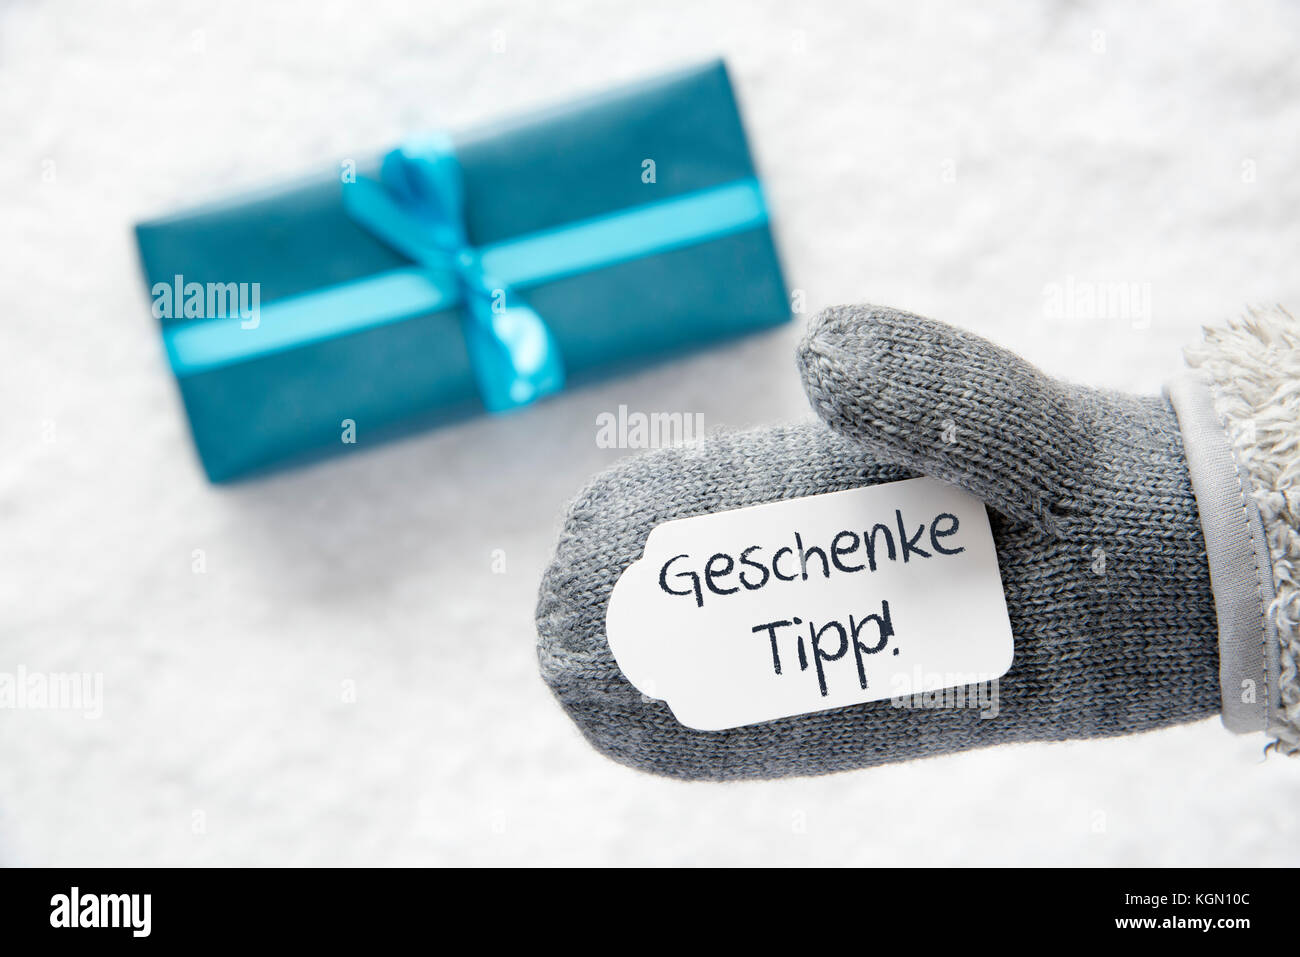 Cadeau turquoise, gant, geschenke tipp signifie pointe cadeaux Banque D'Images